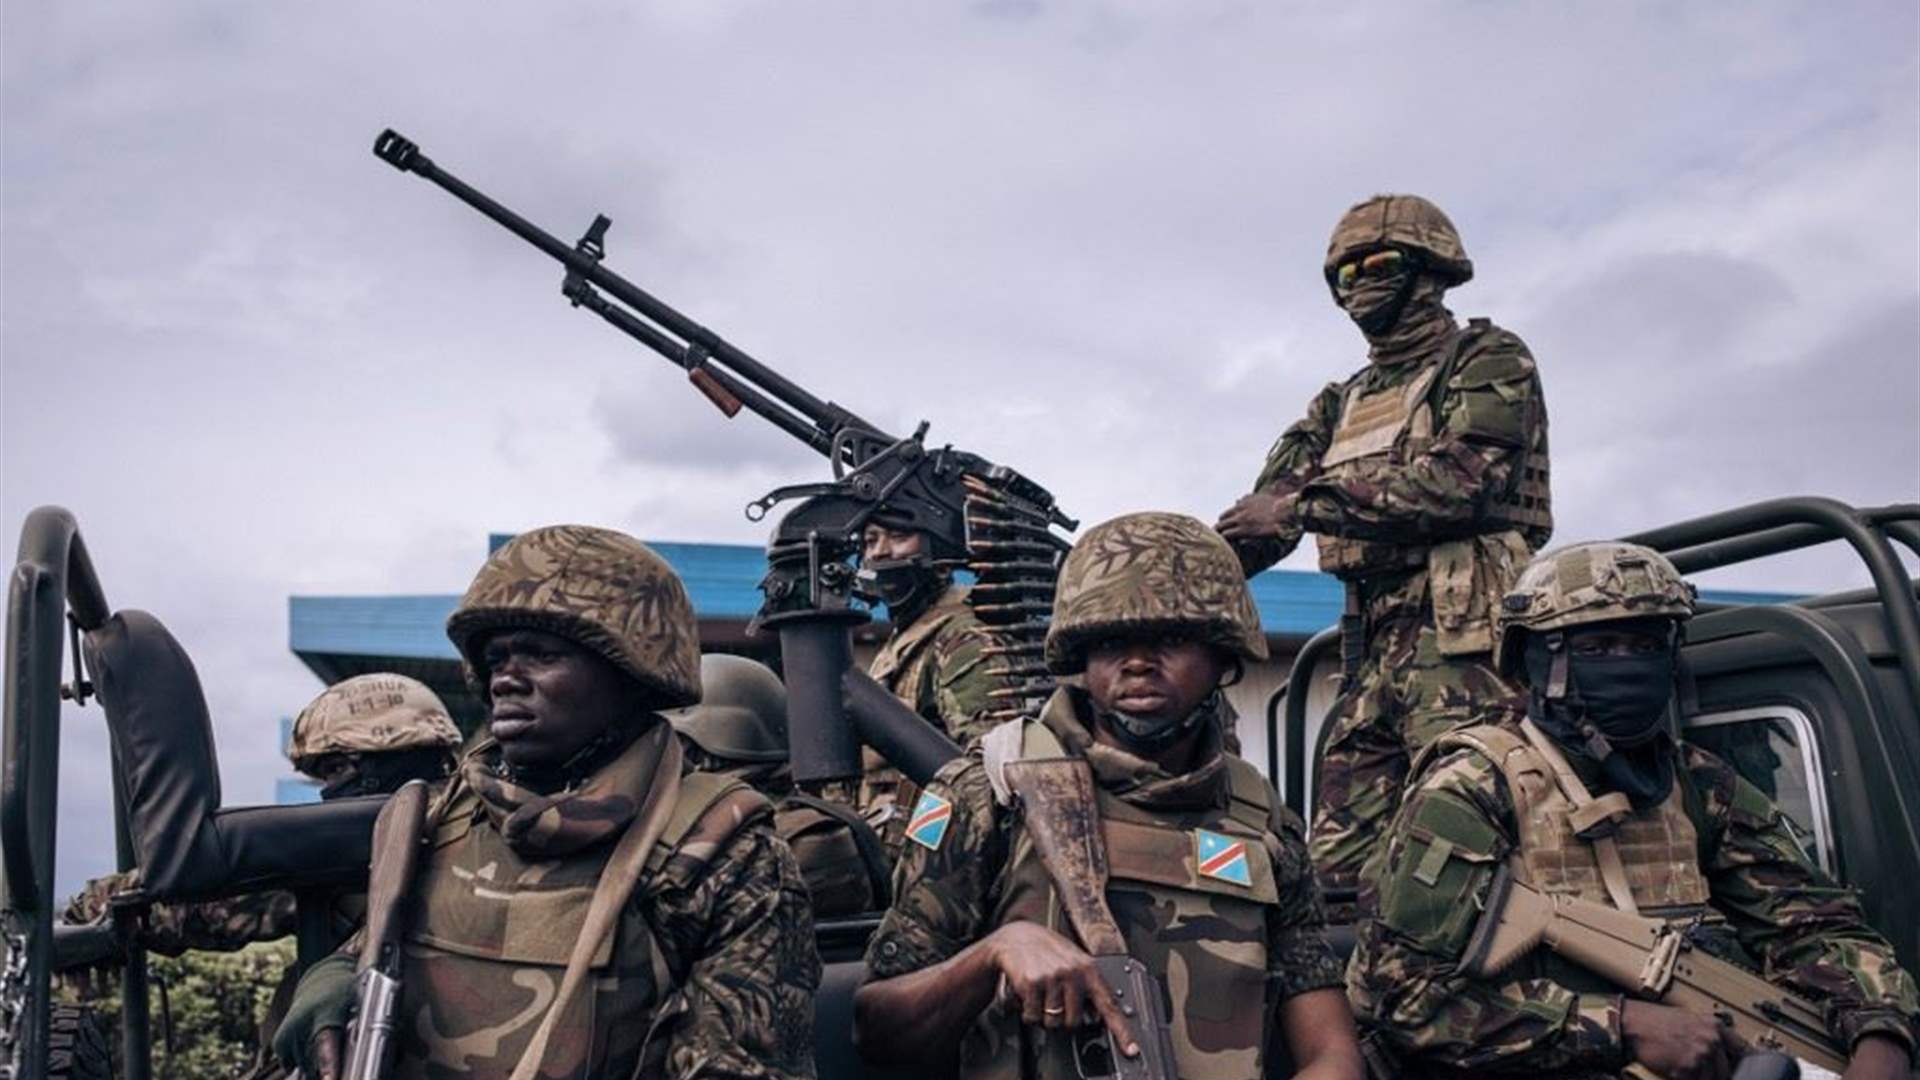 قتلى في هجوم شنه مسلحون في غرب الكونغو الديموقراطية  